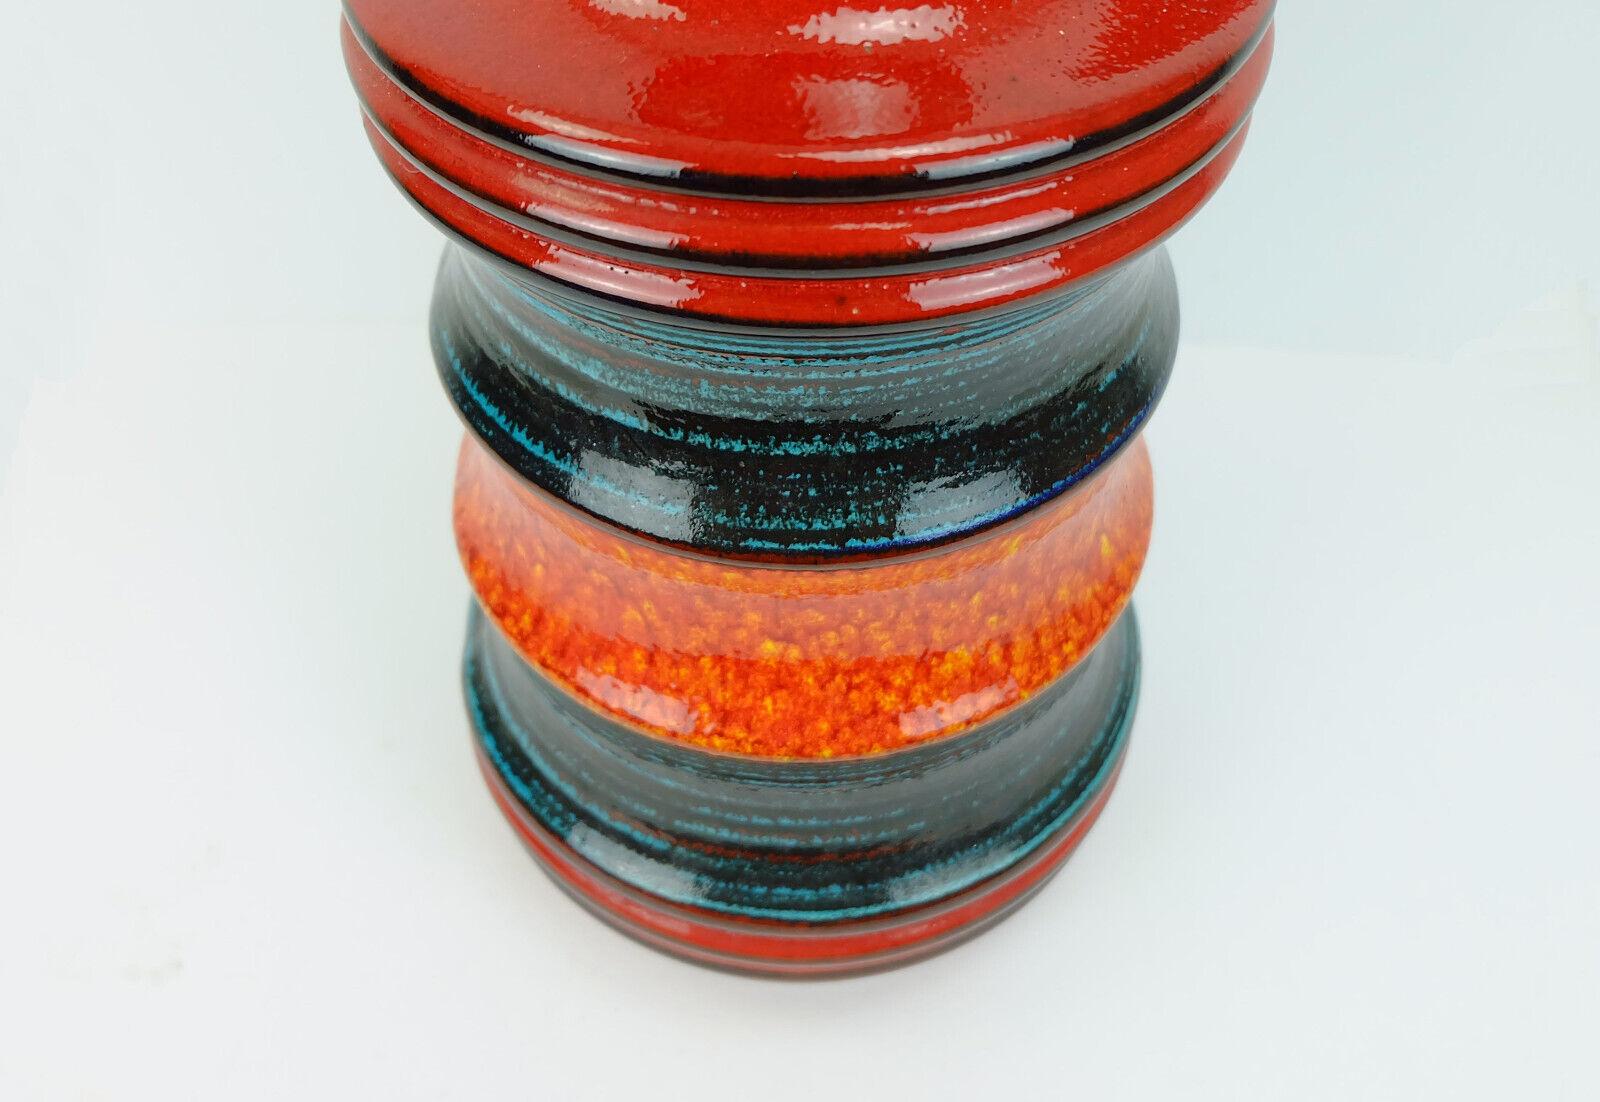 Mid-20th Century large scheurich ceramic floorvase model 427-47 stripe pattern red orange black